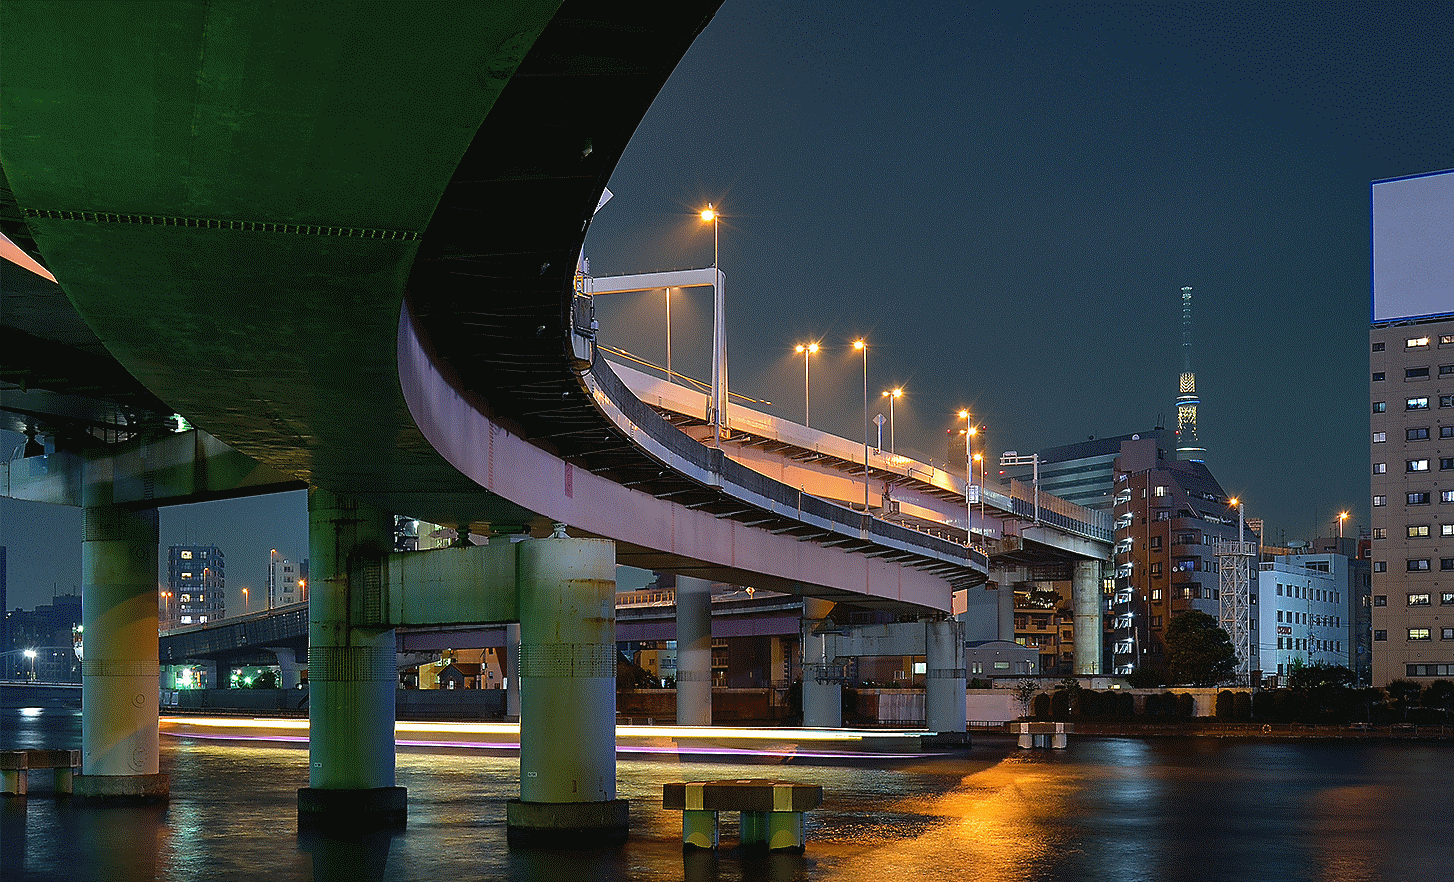 Snímek dálničního viaduktu v městském prostředí pořízený při slabém osvětlení